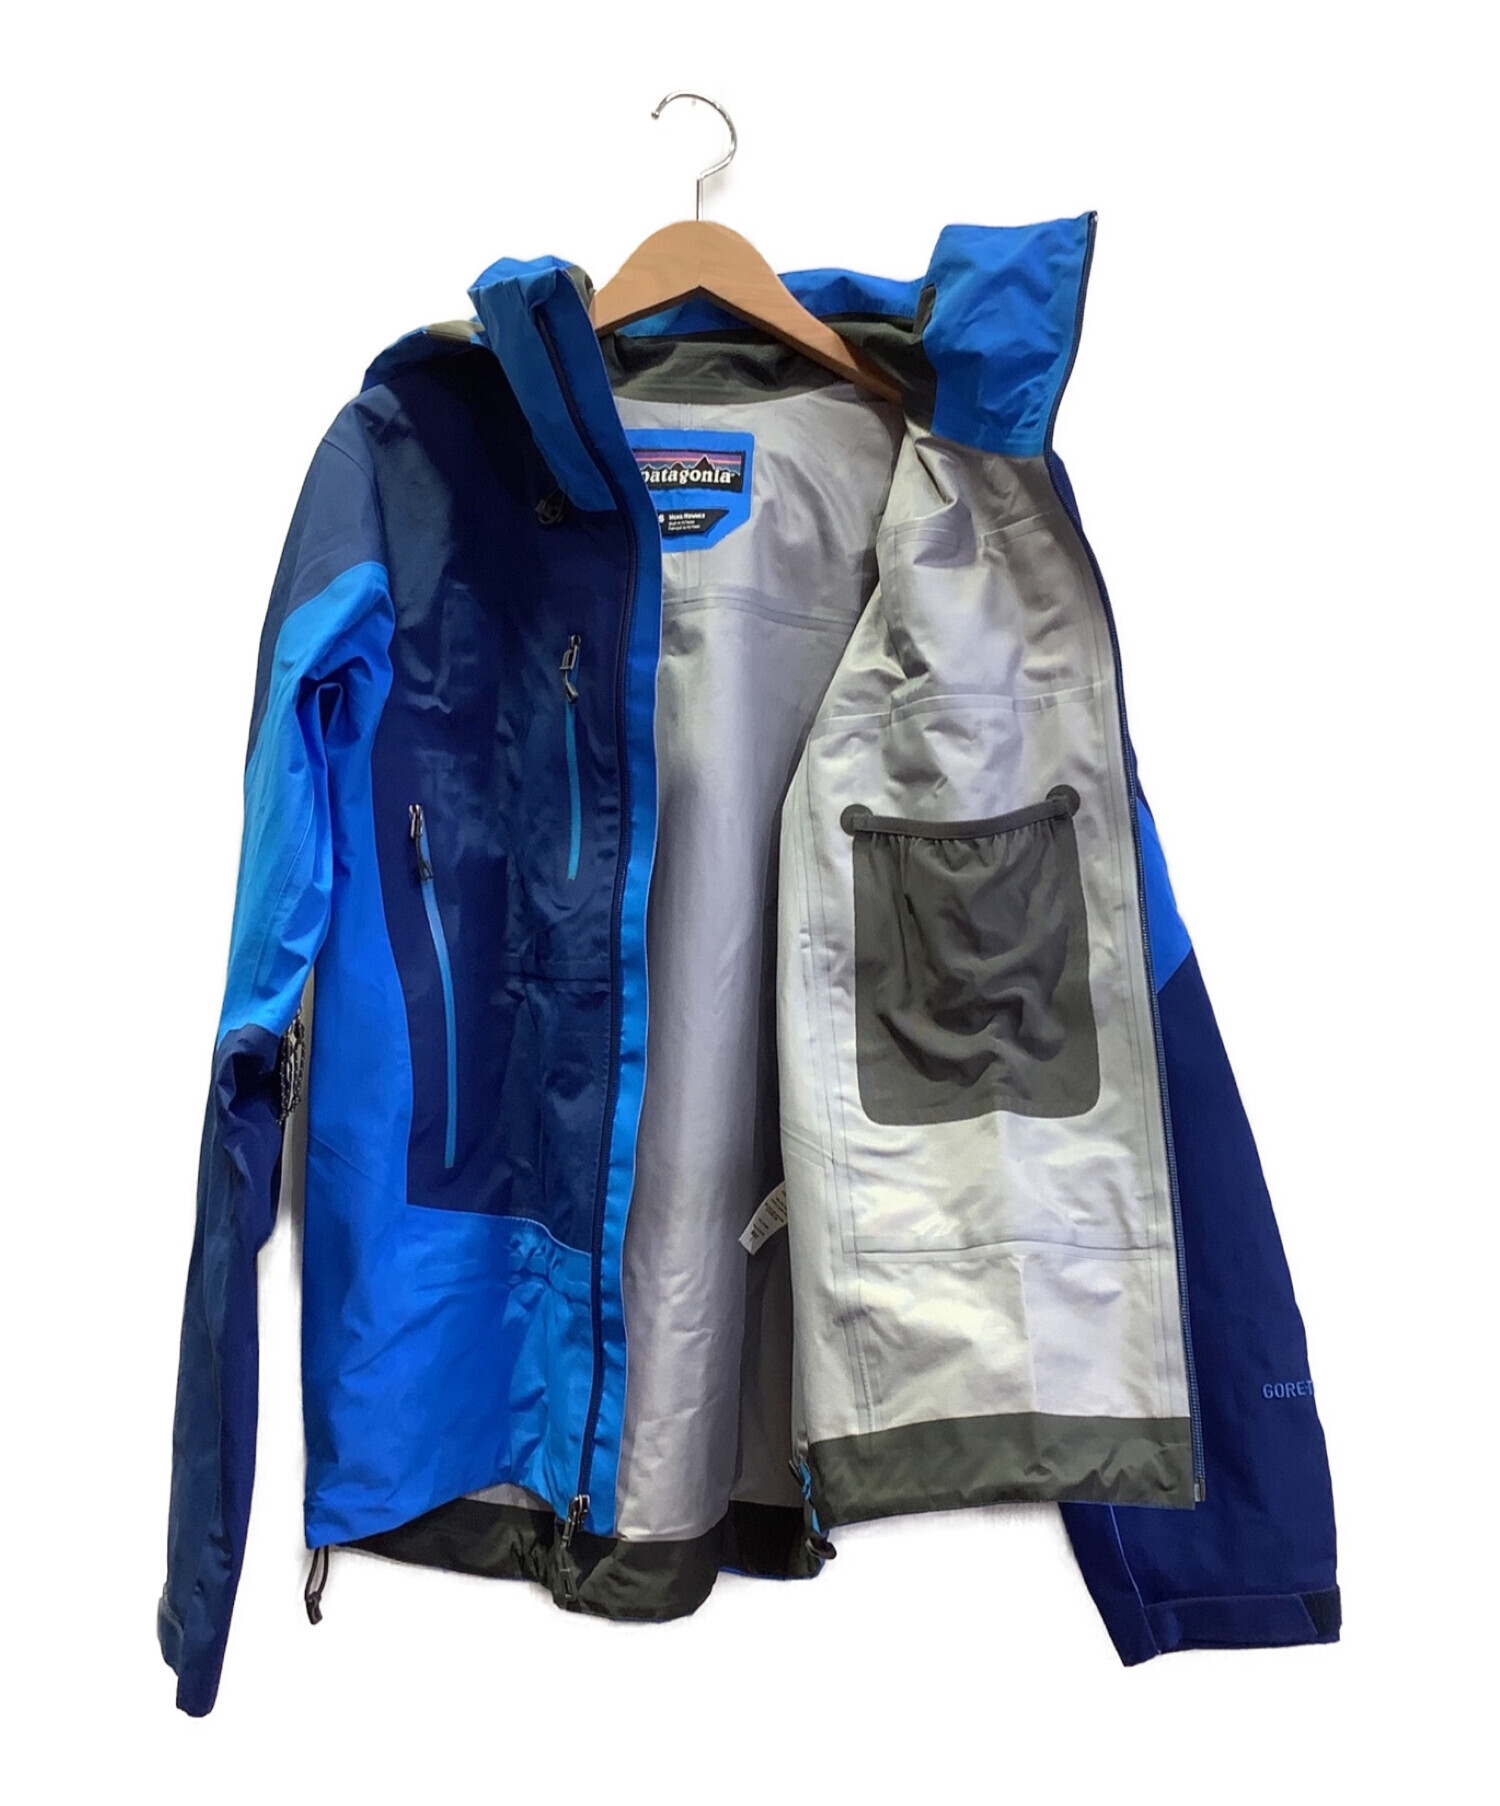 中古・古着通販】Patagonia (パタゴニア) トリオレットジャケット